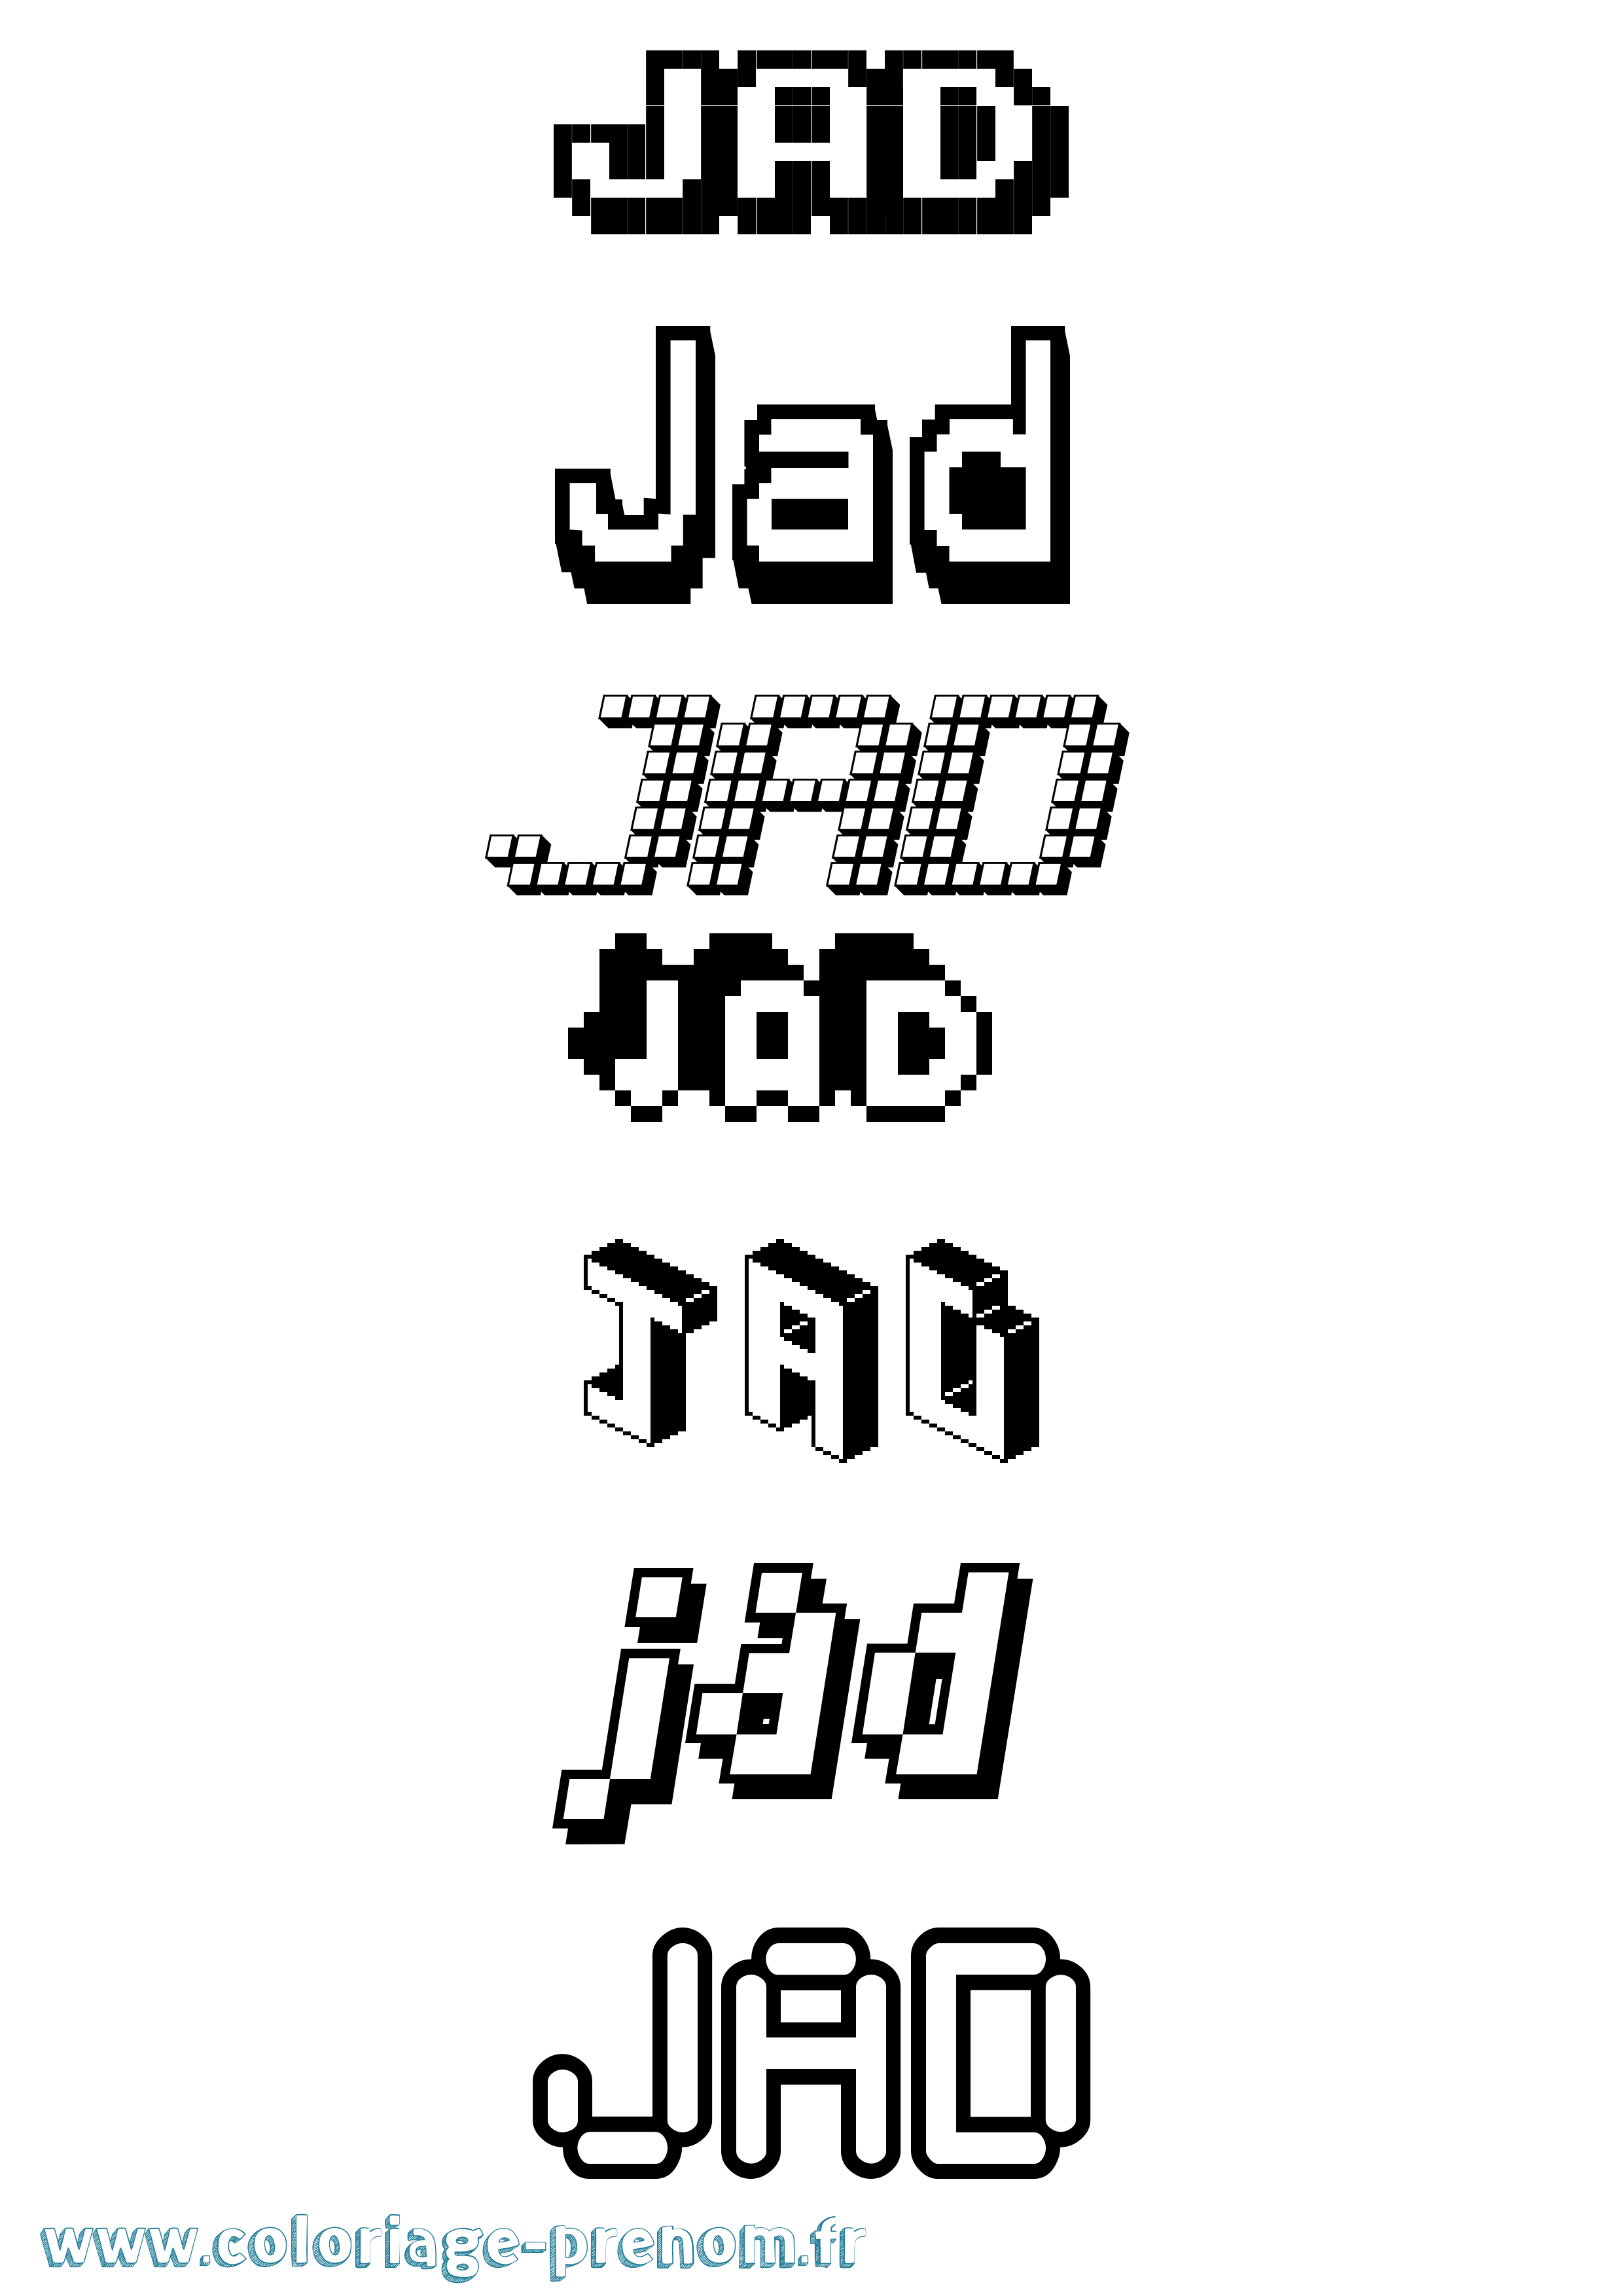 Coloriage prénom Jad